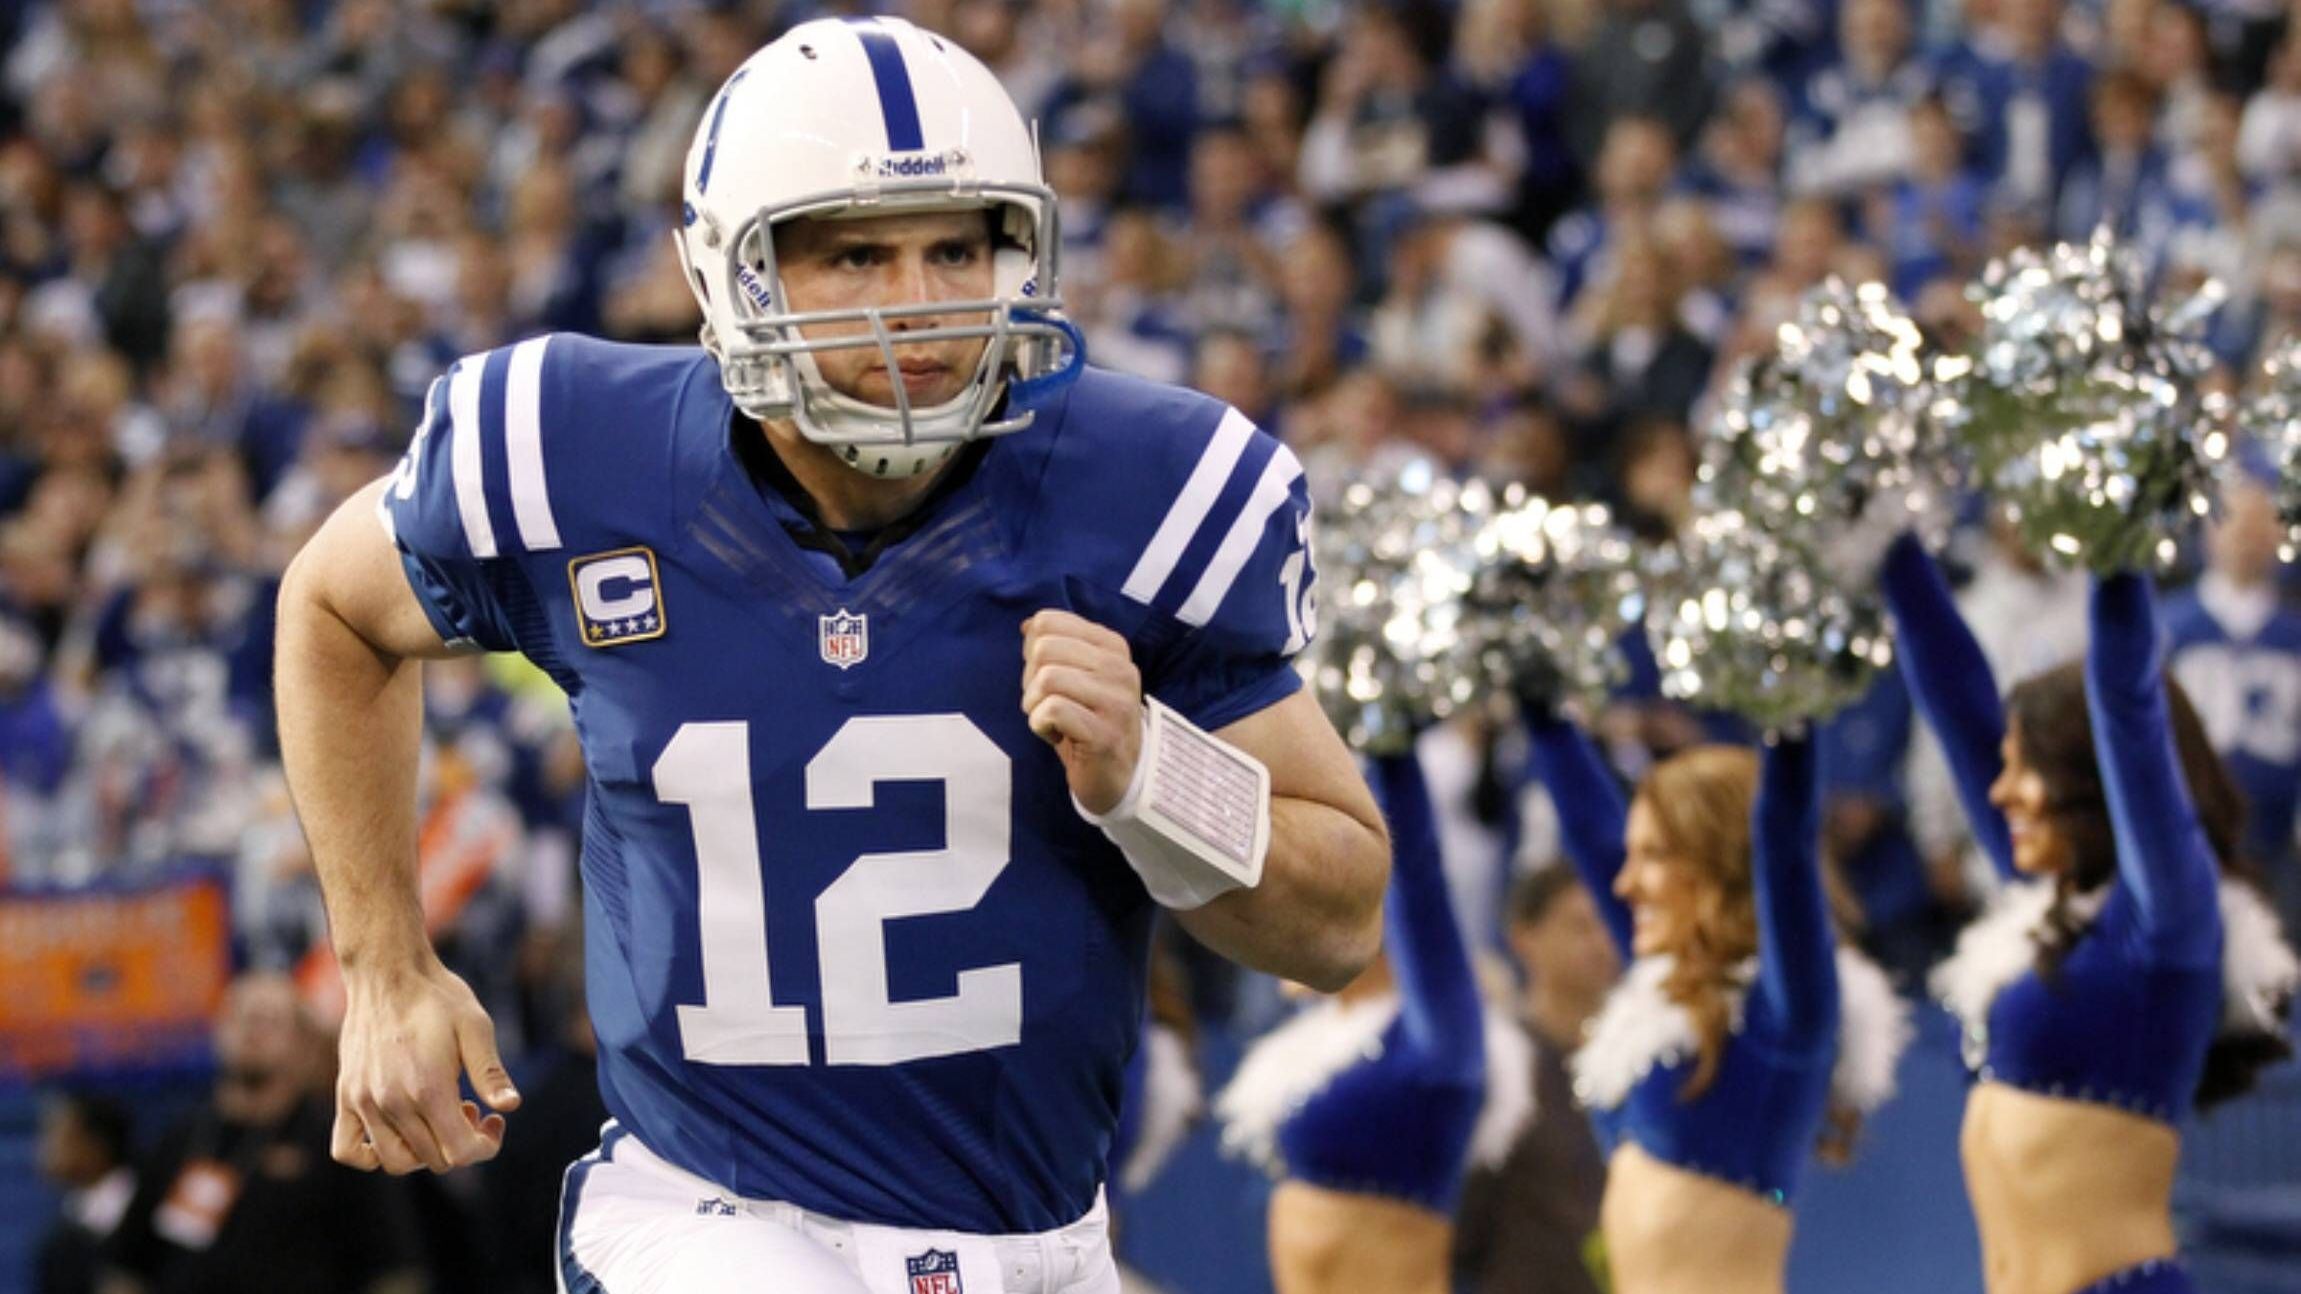 <strong>10. Platz: Andrew Luck (2012, Indianapolis Colts)</strong><br>Führte die Colts mit über 4.300 Passing Yards und 23 Touchdowns zu einem 11:5-Record, belebte die Franchise sofort wieder und wurde in den Pro Bowl berufen.